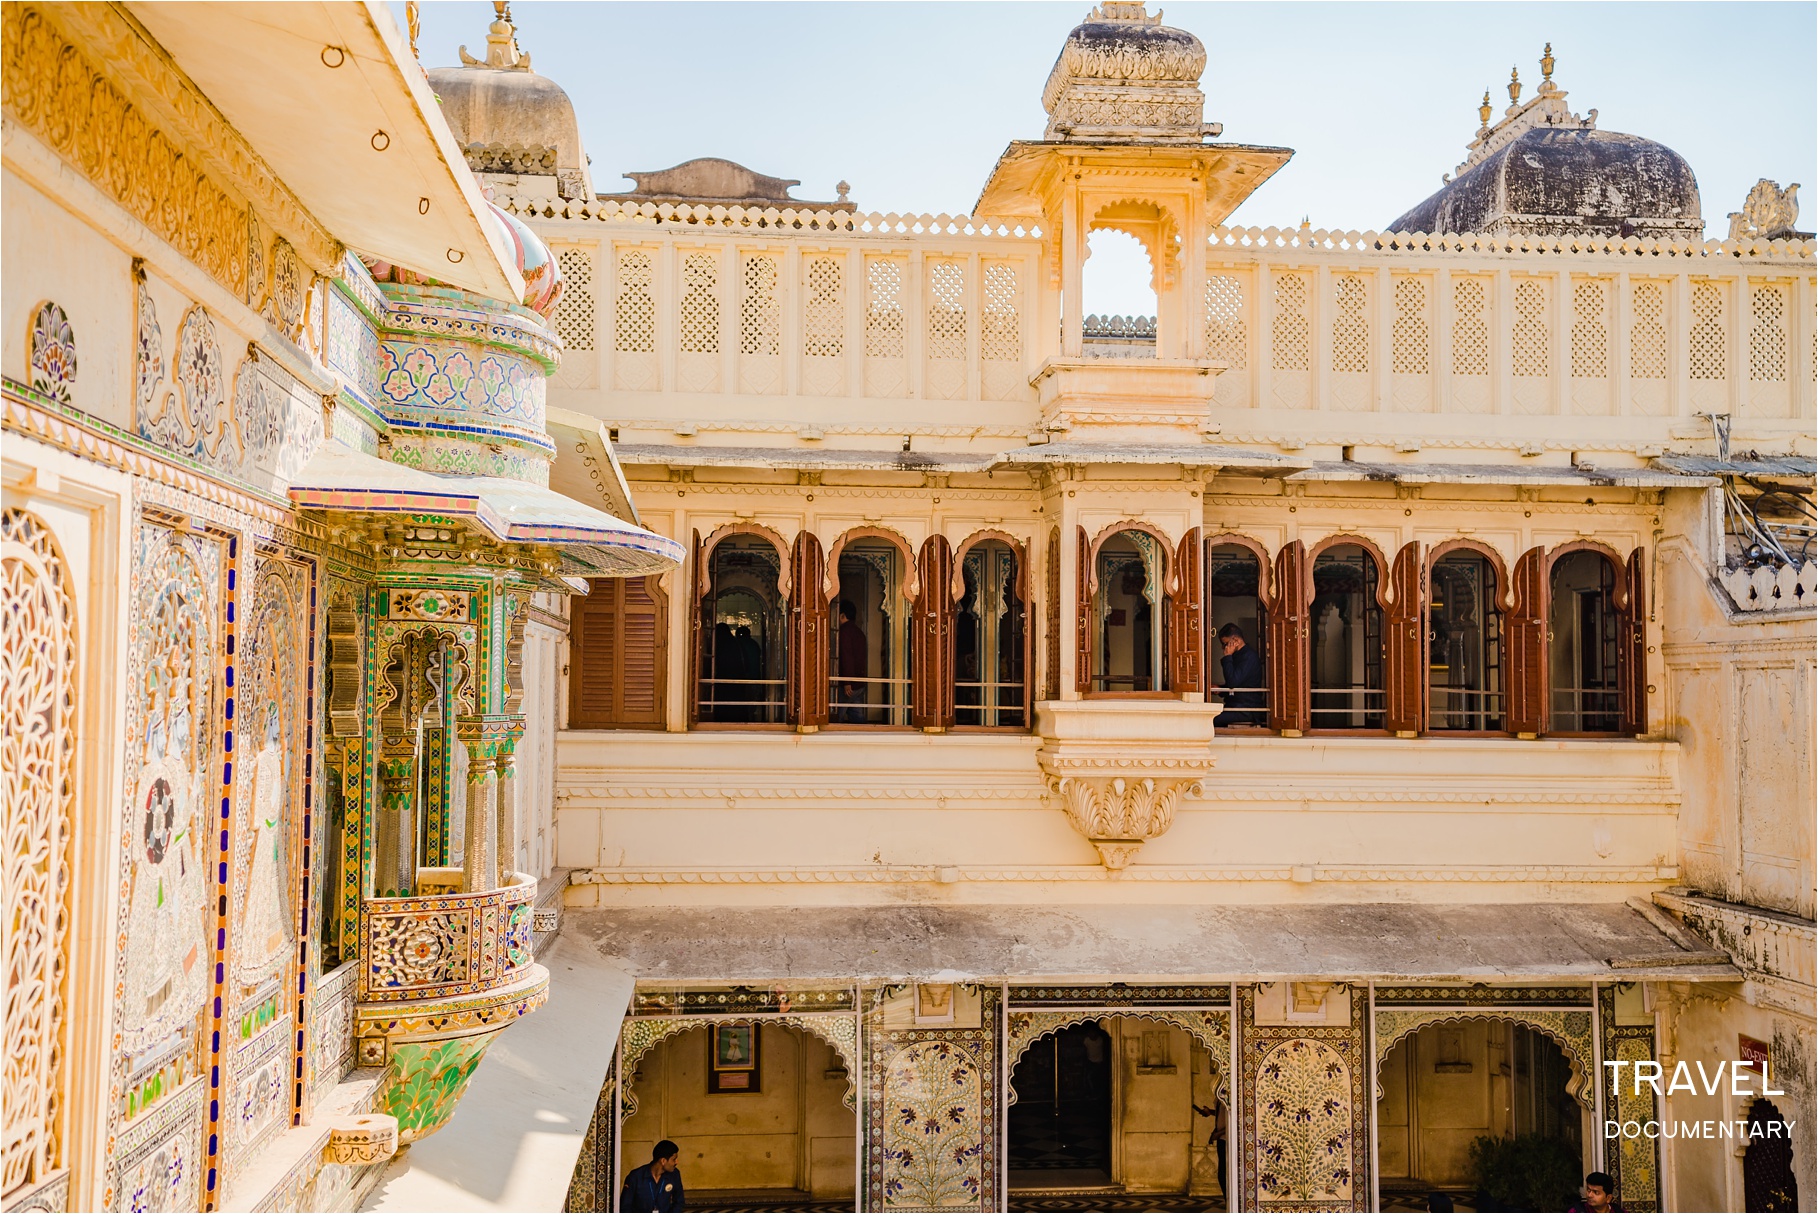 City Palace, Udaipur, India | Wedding Documentary Photo + Cinema